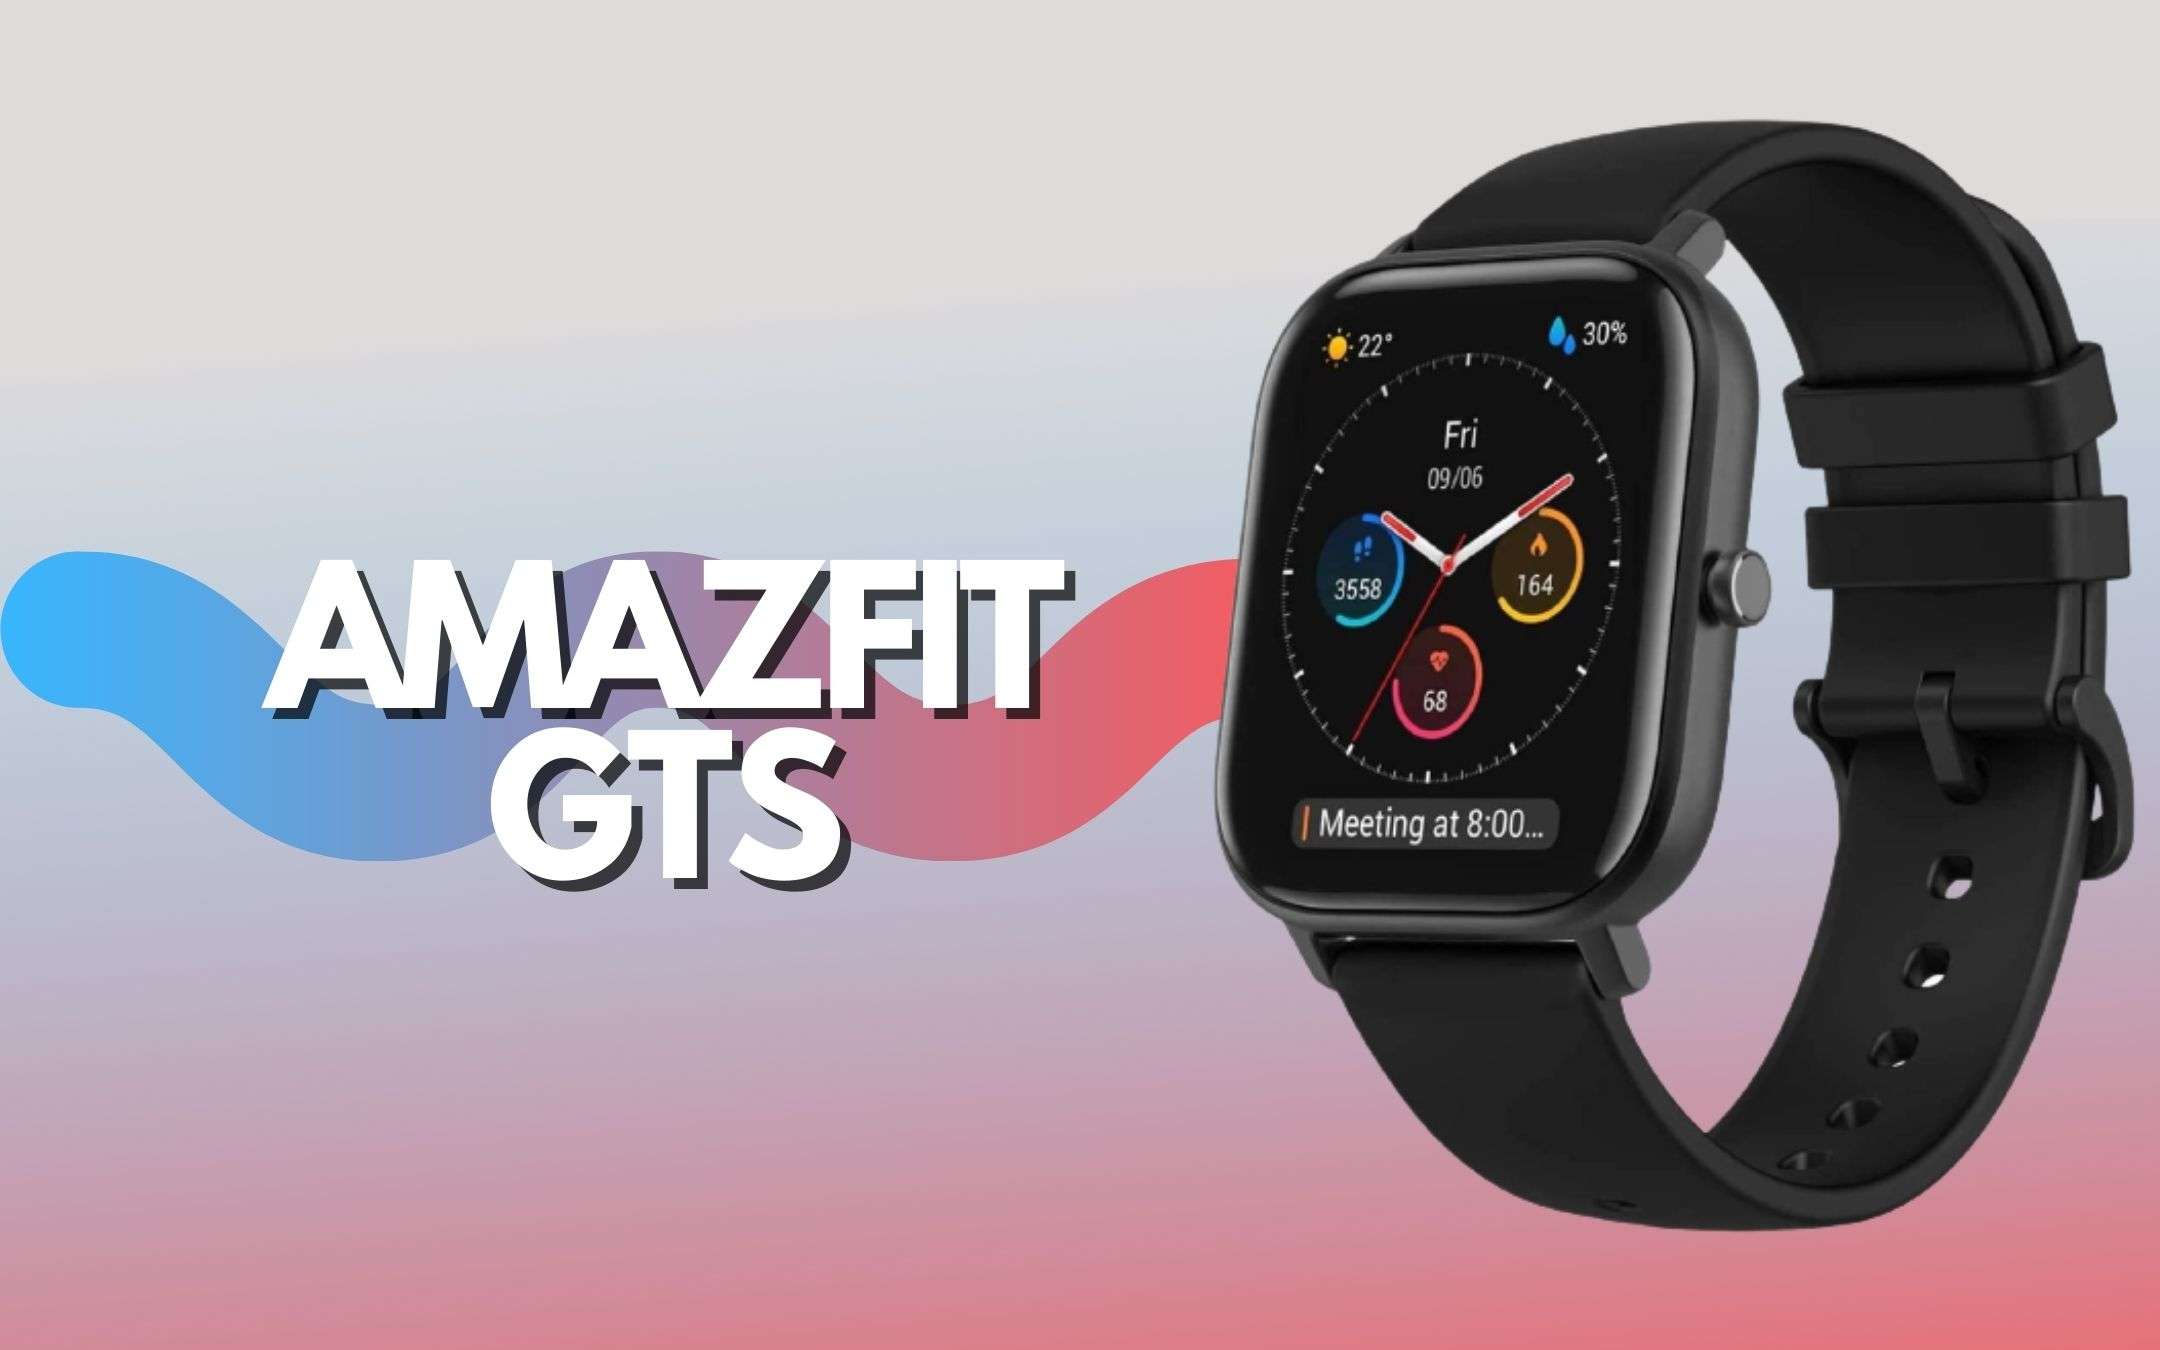 Amazfit GTS è lo smartwatch in offerta con DOPPIO SCONTO